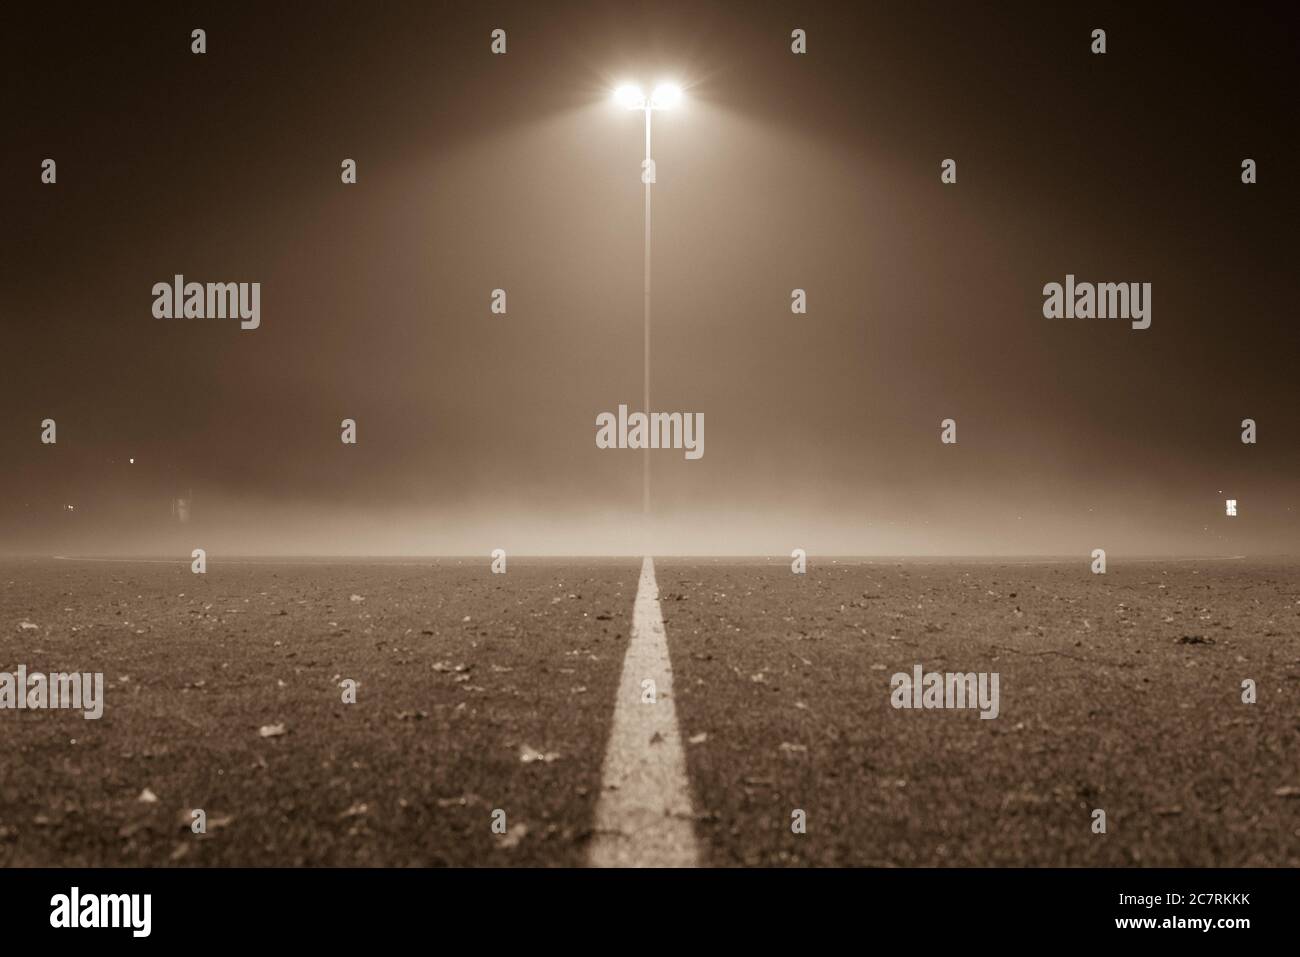 Nebliger Fußballplatz, Fußball, Fußballplatz bei Nacht mit Nebel, Laterne und Nebel, schwarz-weiß Foto Stockfoto